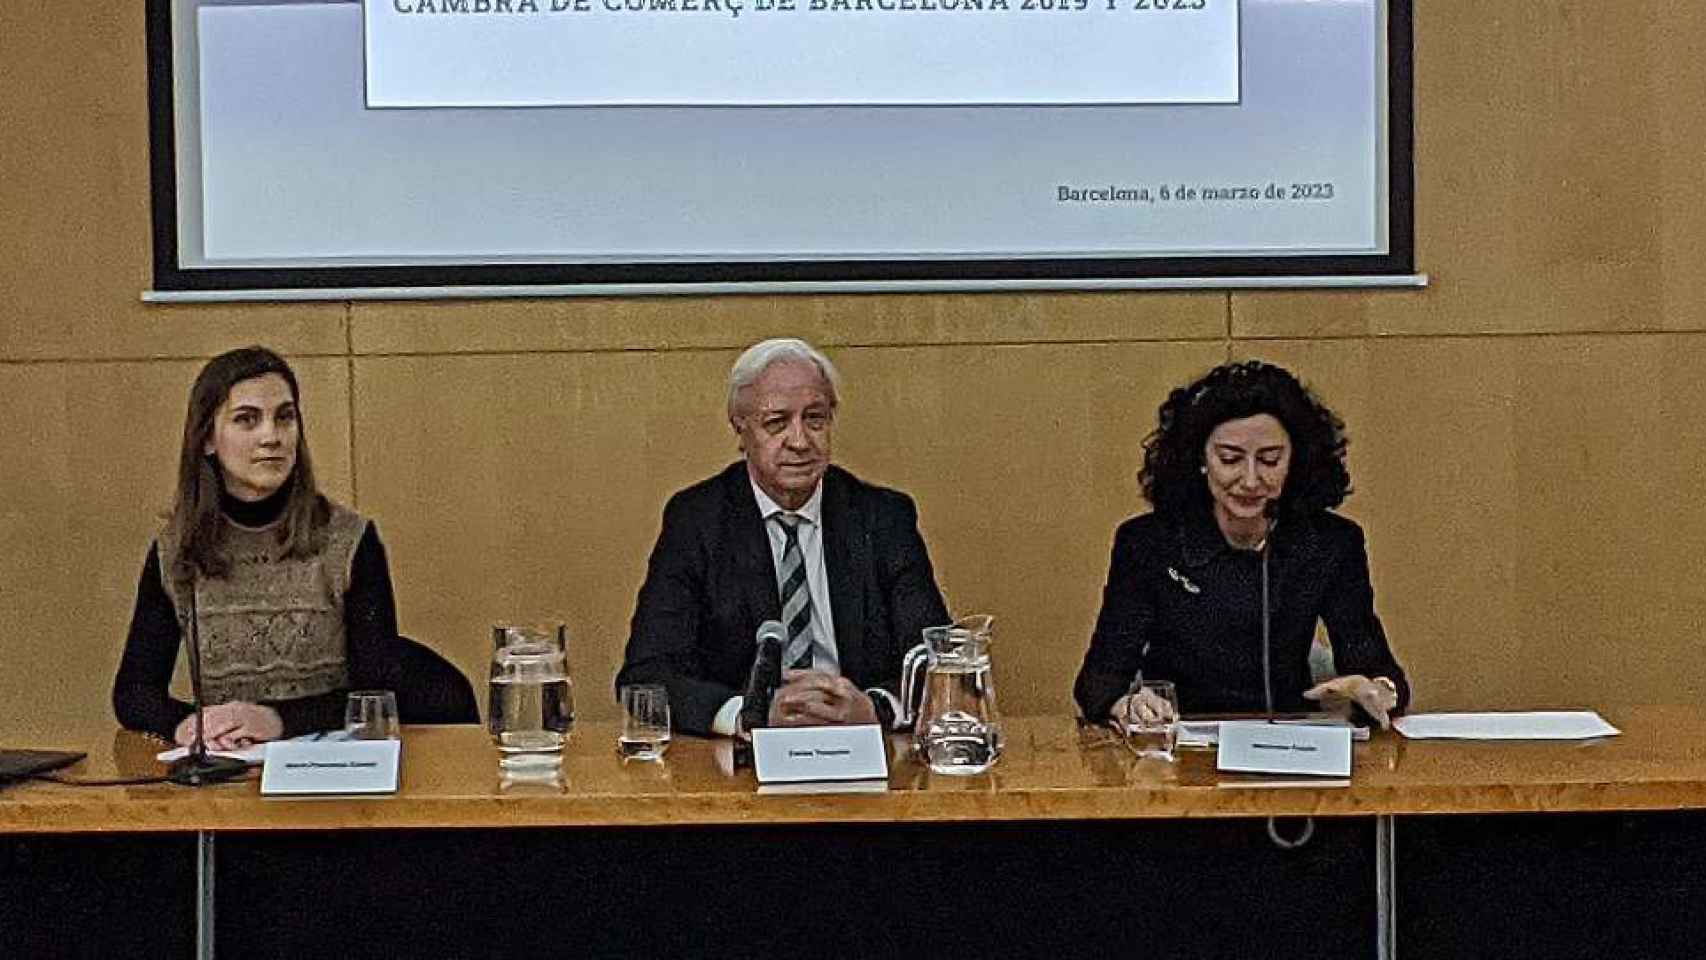 El empresario Carles Tusquets explica las irregularidades de las elecciones a la Cámara de Comercio de Barcelona de 2019 / CG